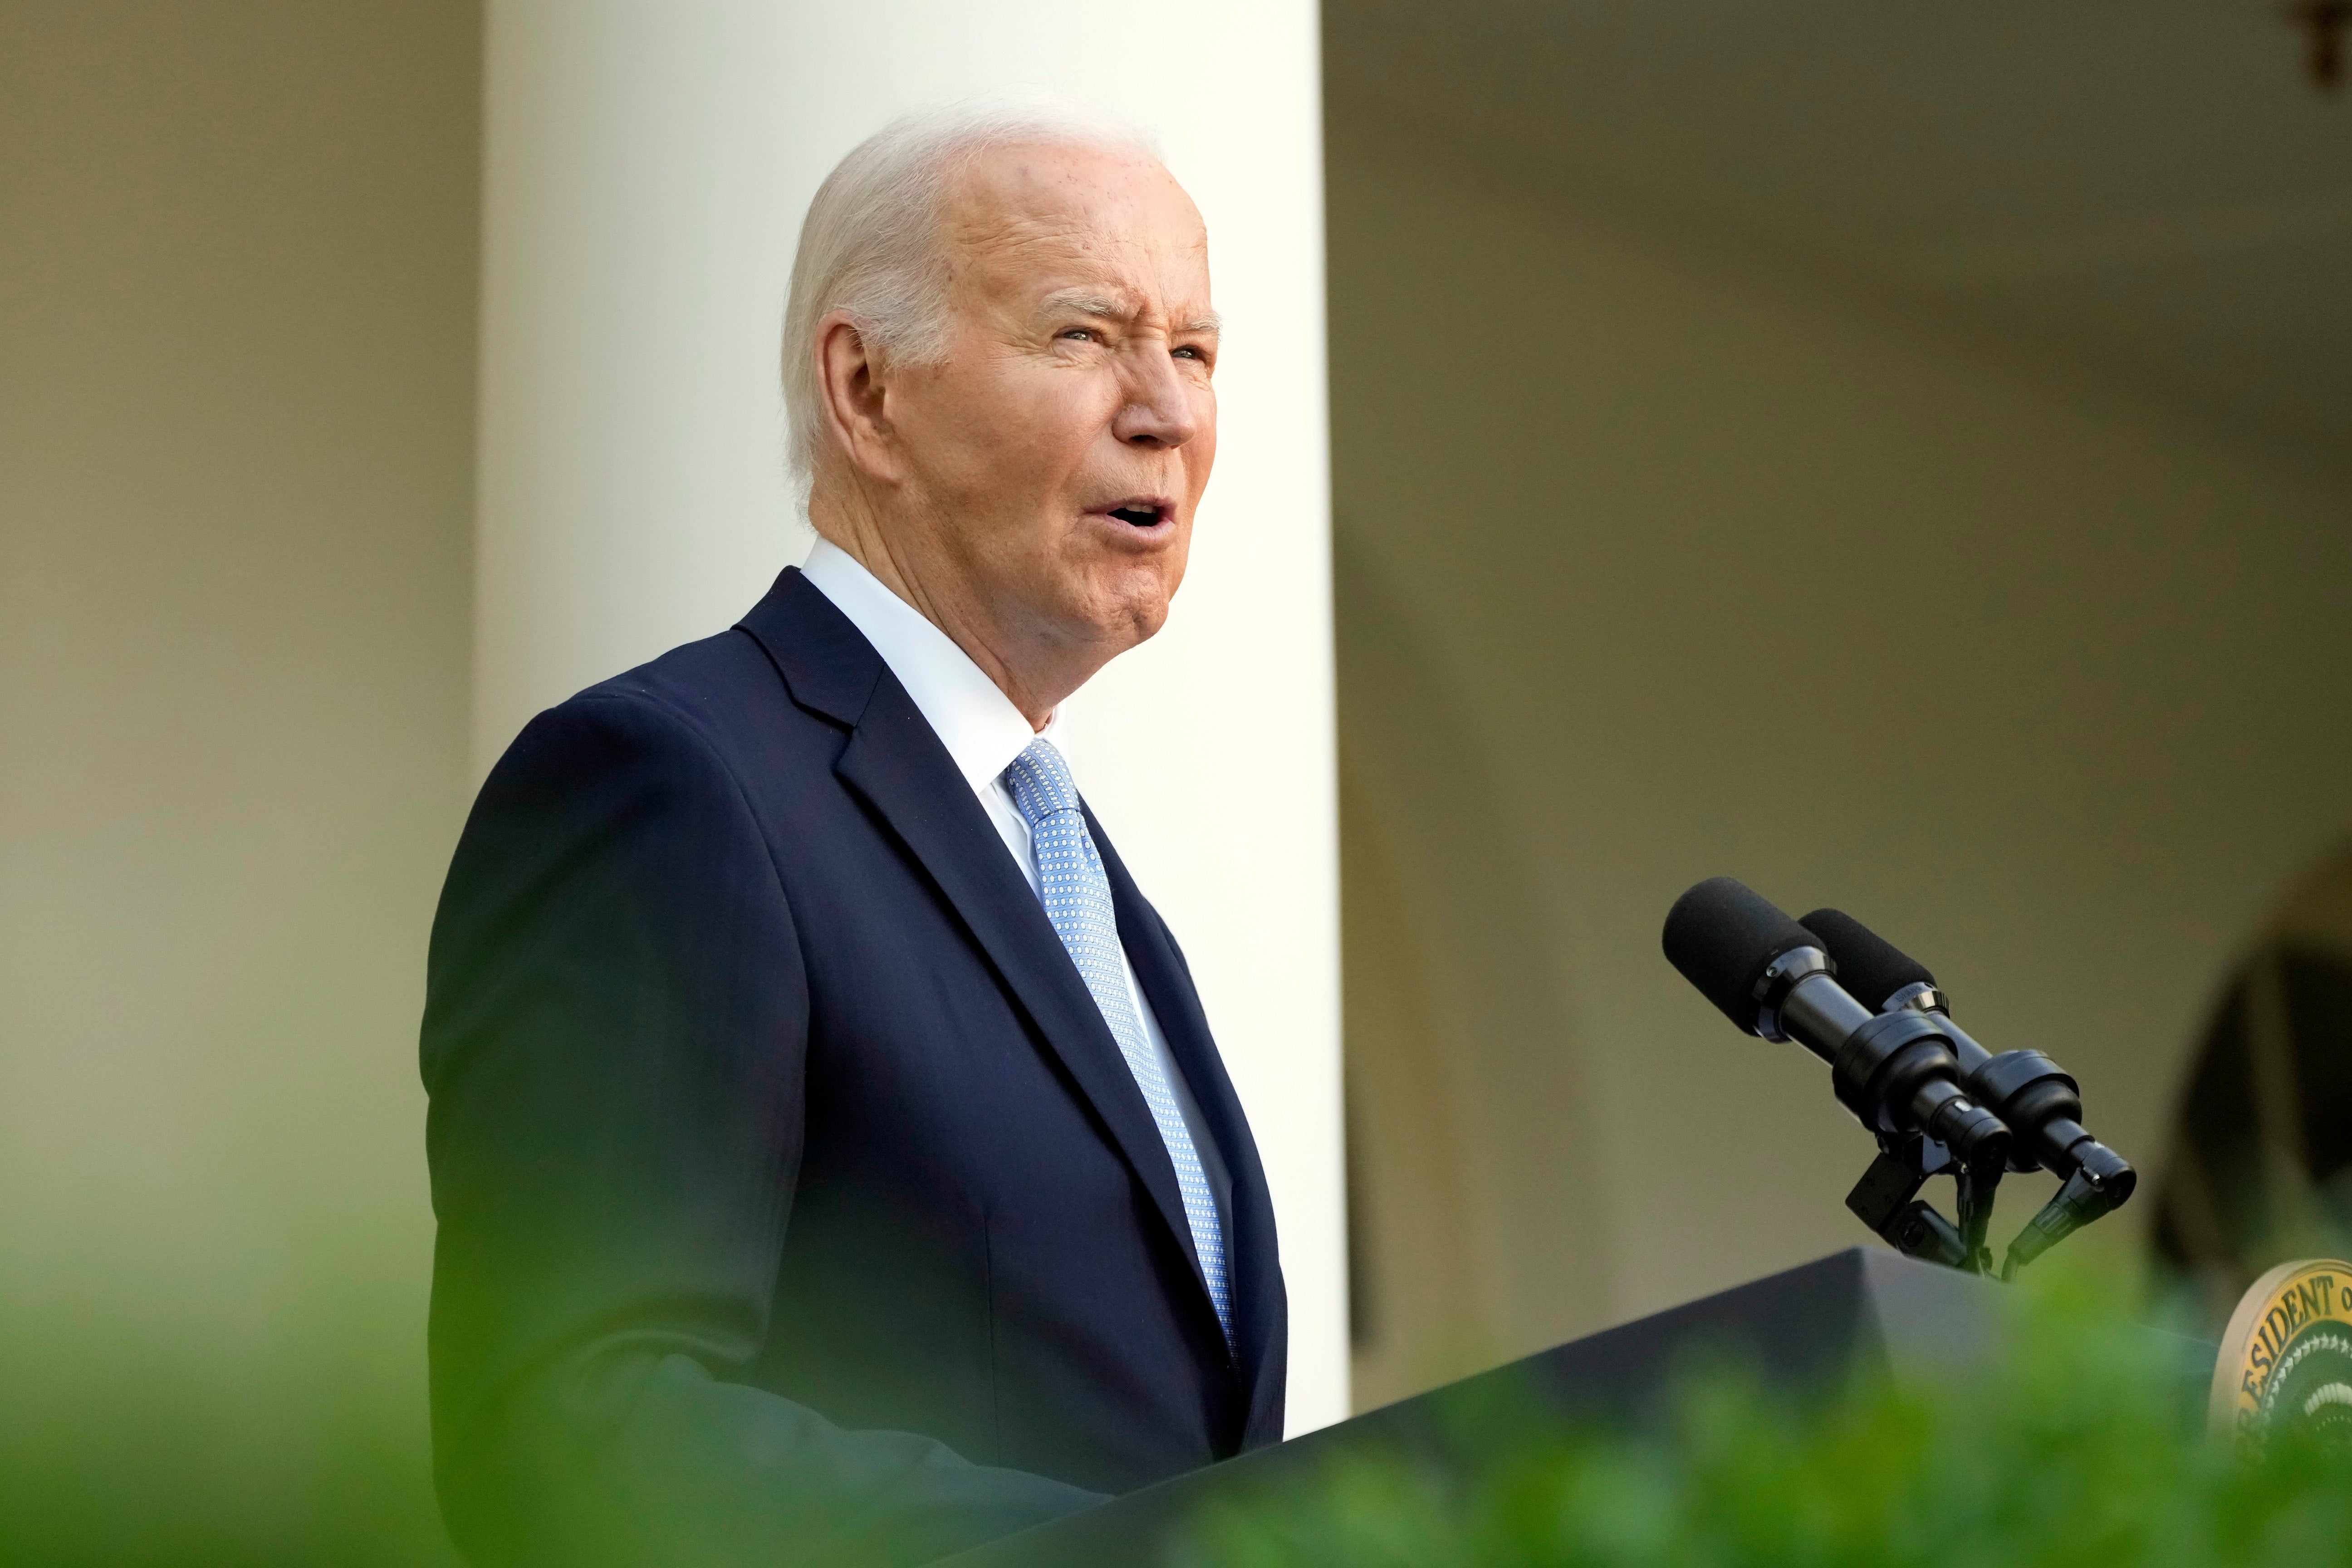 President Joe Biden speaks at the White House on May 20